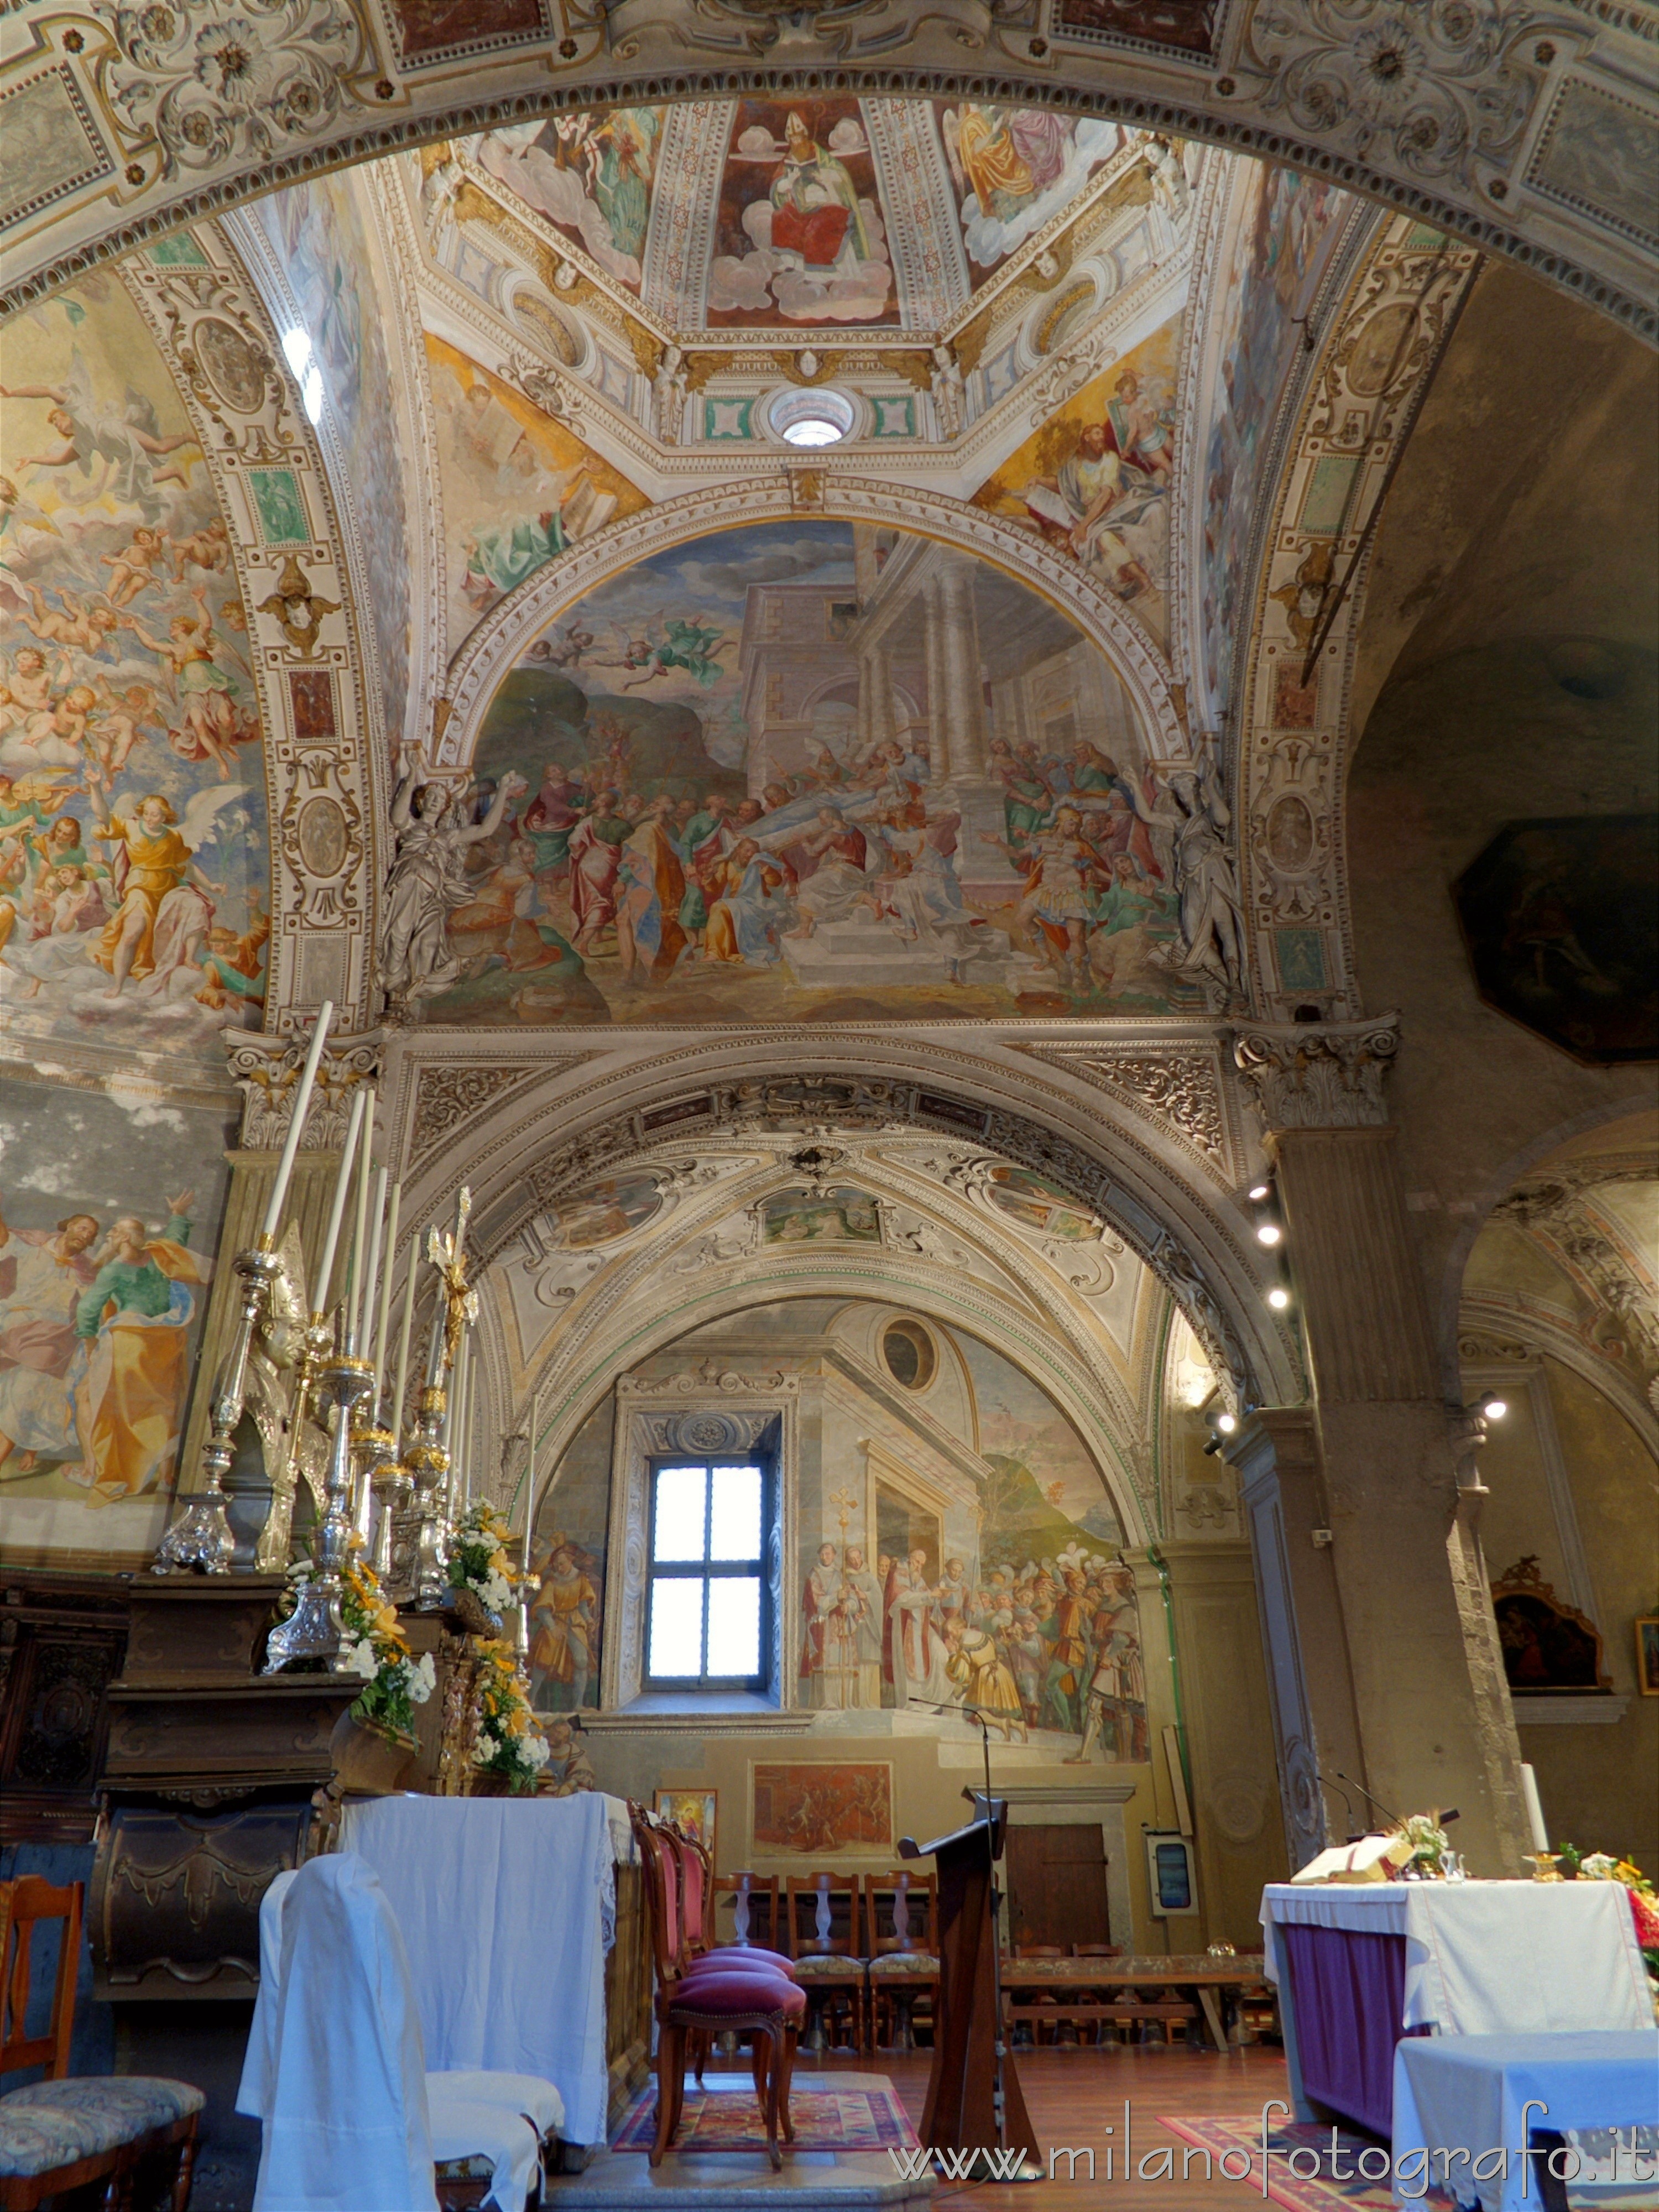 Pallanza frazione di Verbania (VCO, Italy): Right side of the presbytery of the Church of the Madonna di Campagna - Pallanza frazione di Verbania (VCO, Italy)